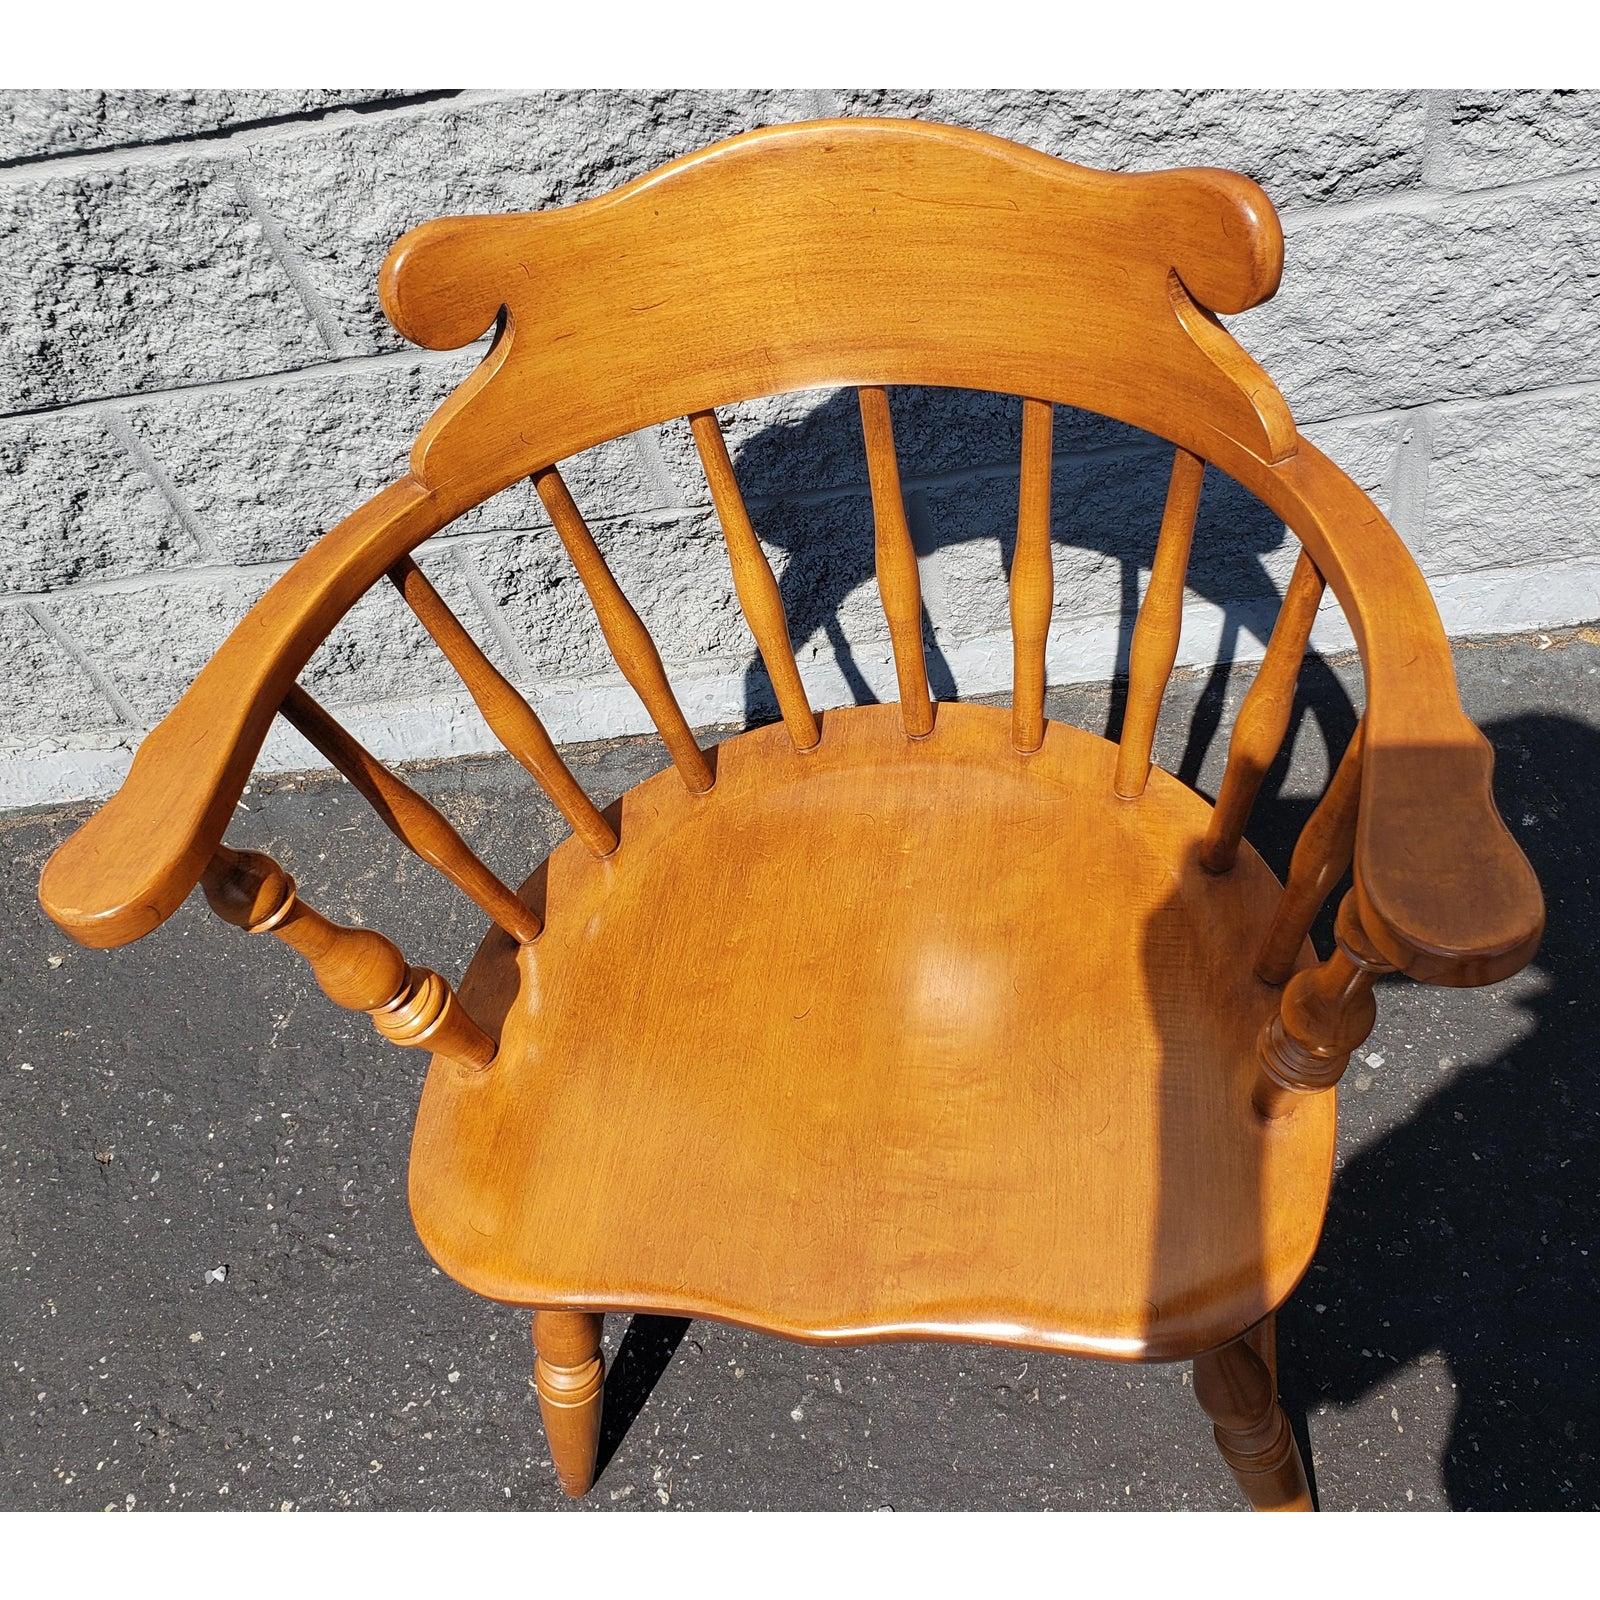 1970er Conant Ball Windsor-Stühle mit niedriger Rückenlehne. Konstruktion aus massivem Ahornholz. Ausgezeichneter Zustand.
Niedrige Rückenlehne und Bogenlehne mit Spindeln.
Die Maße sind 25,25